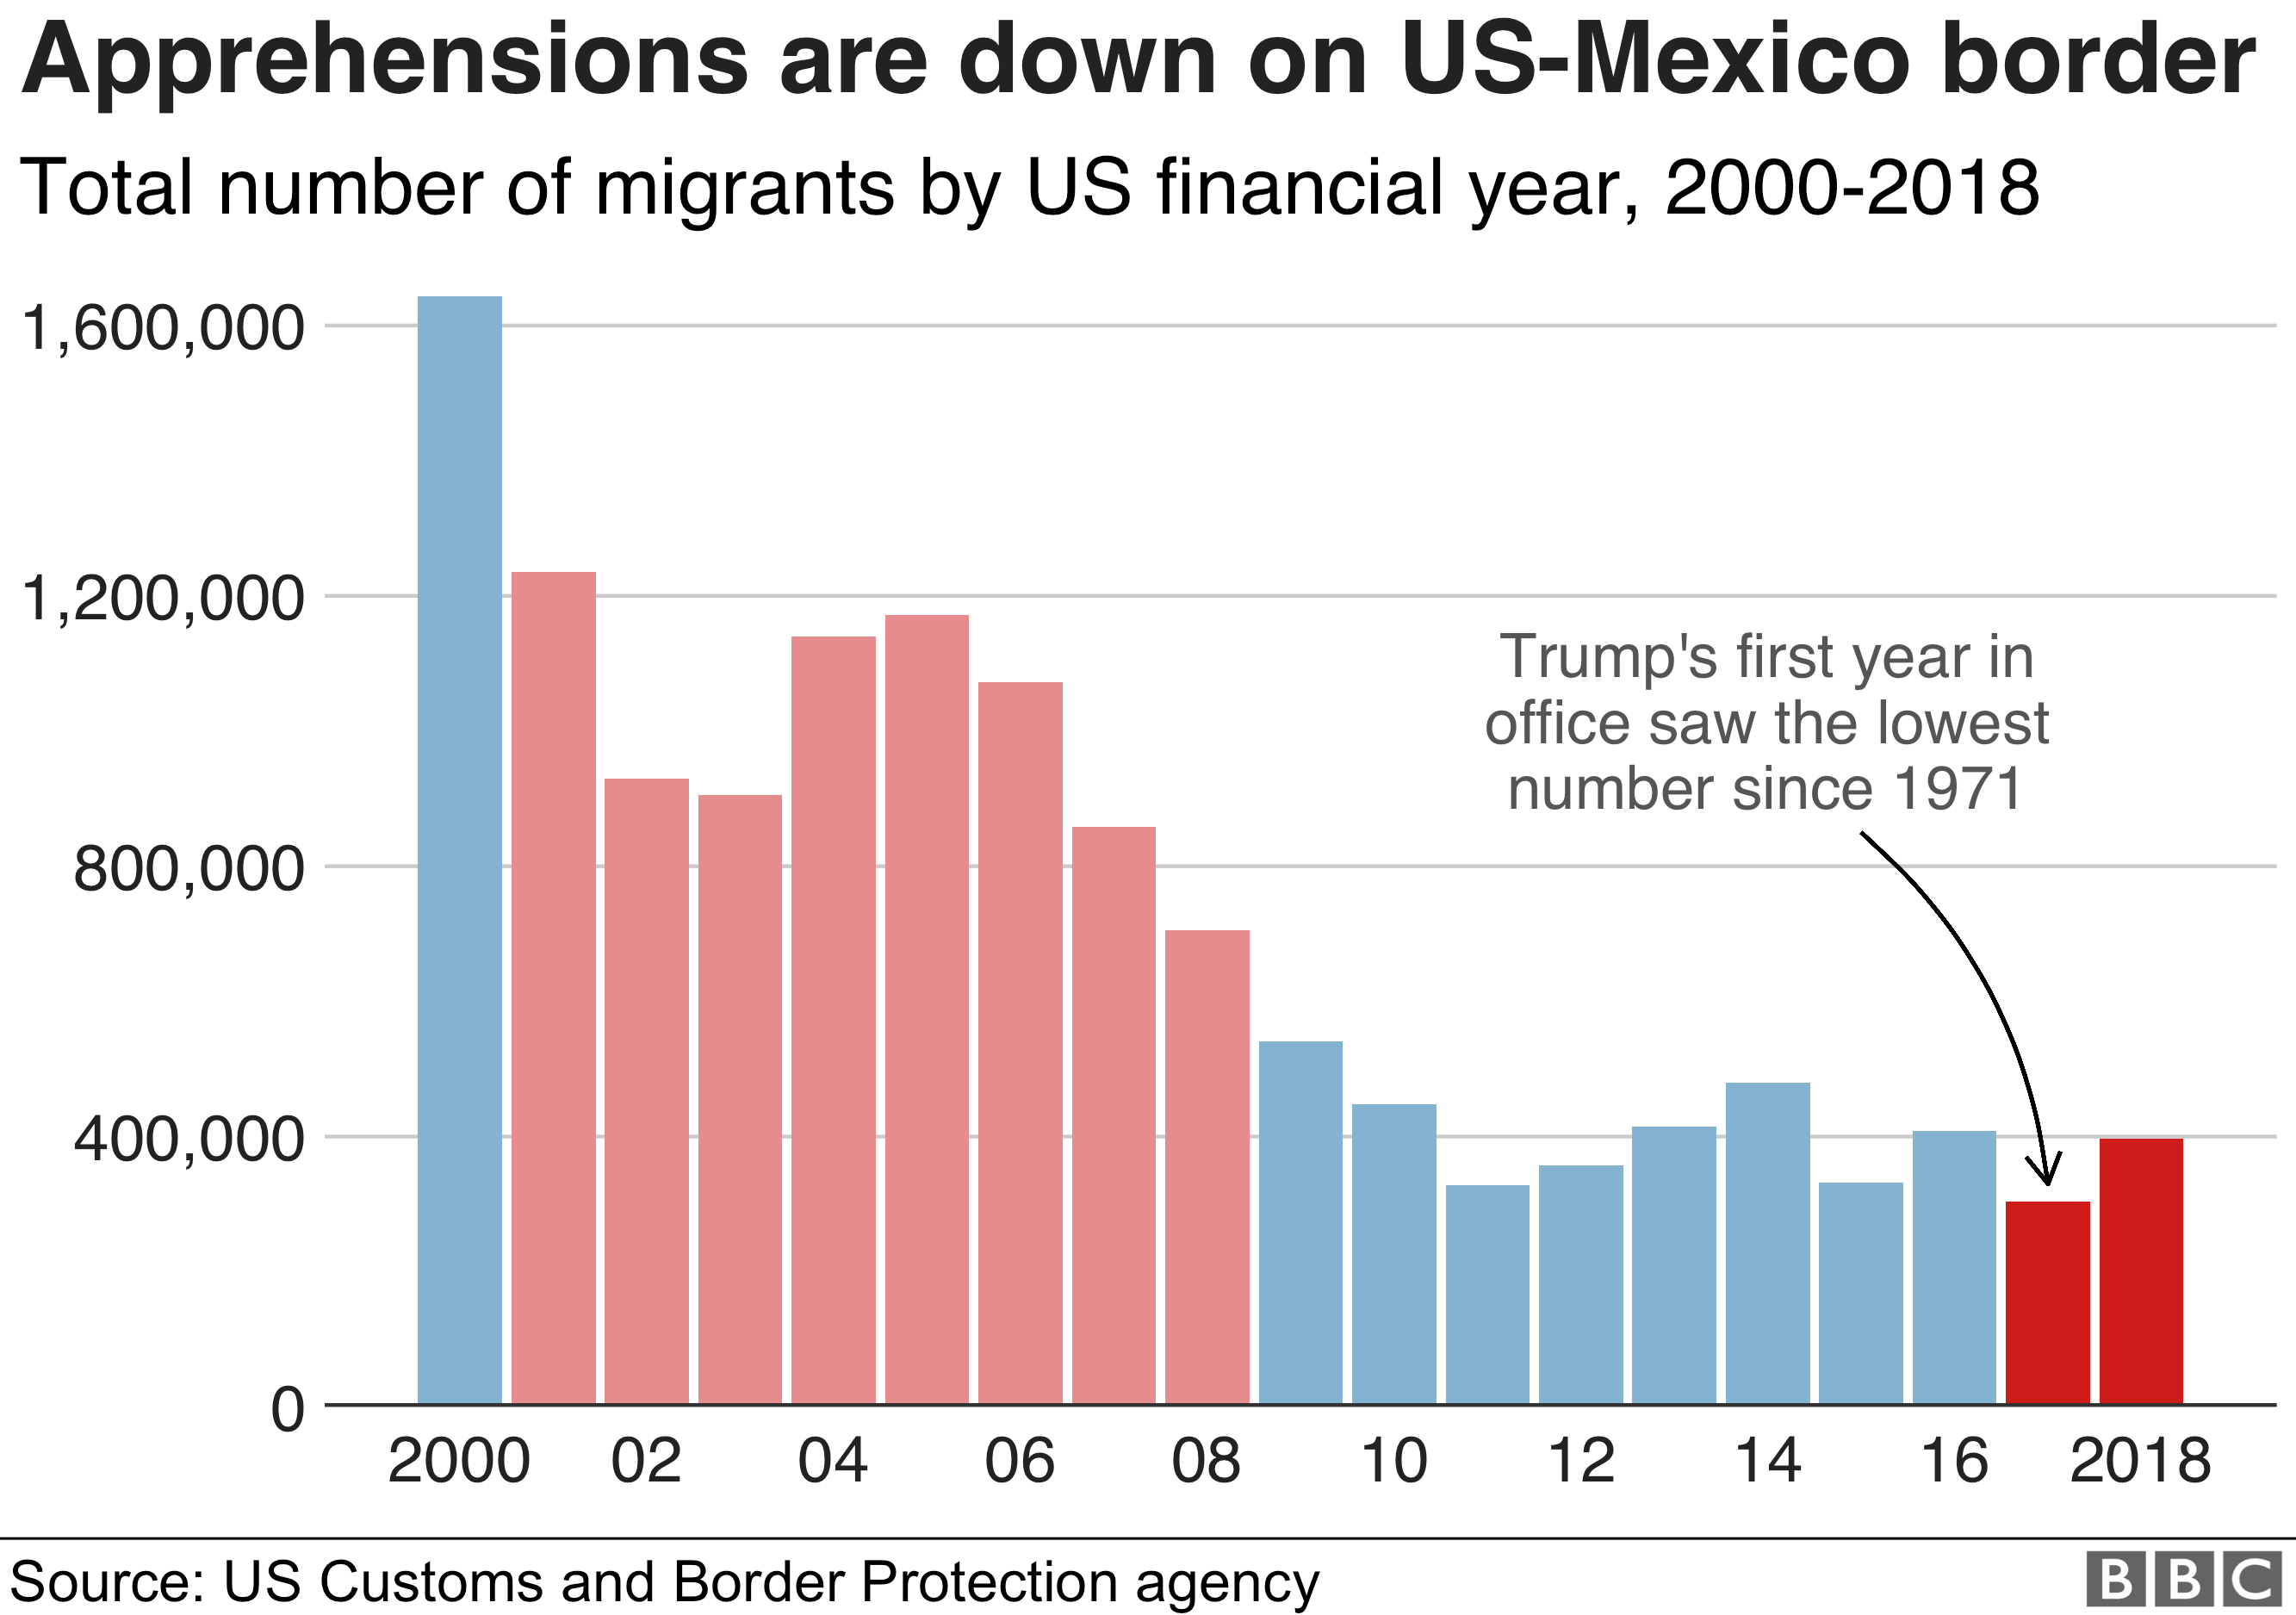 Гистограмма, показывающая опасения на границе США и Мексики, снизилась с 2000 года